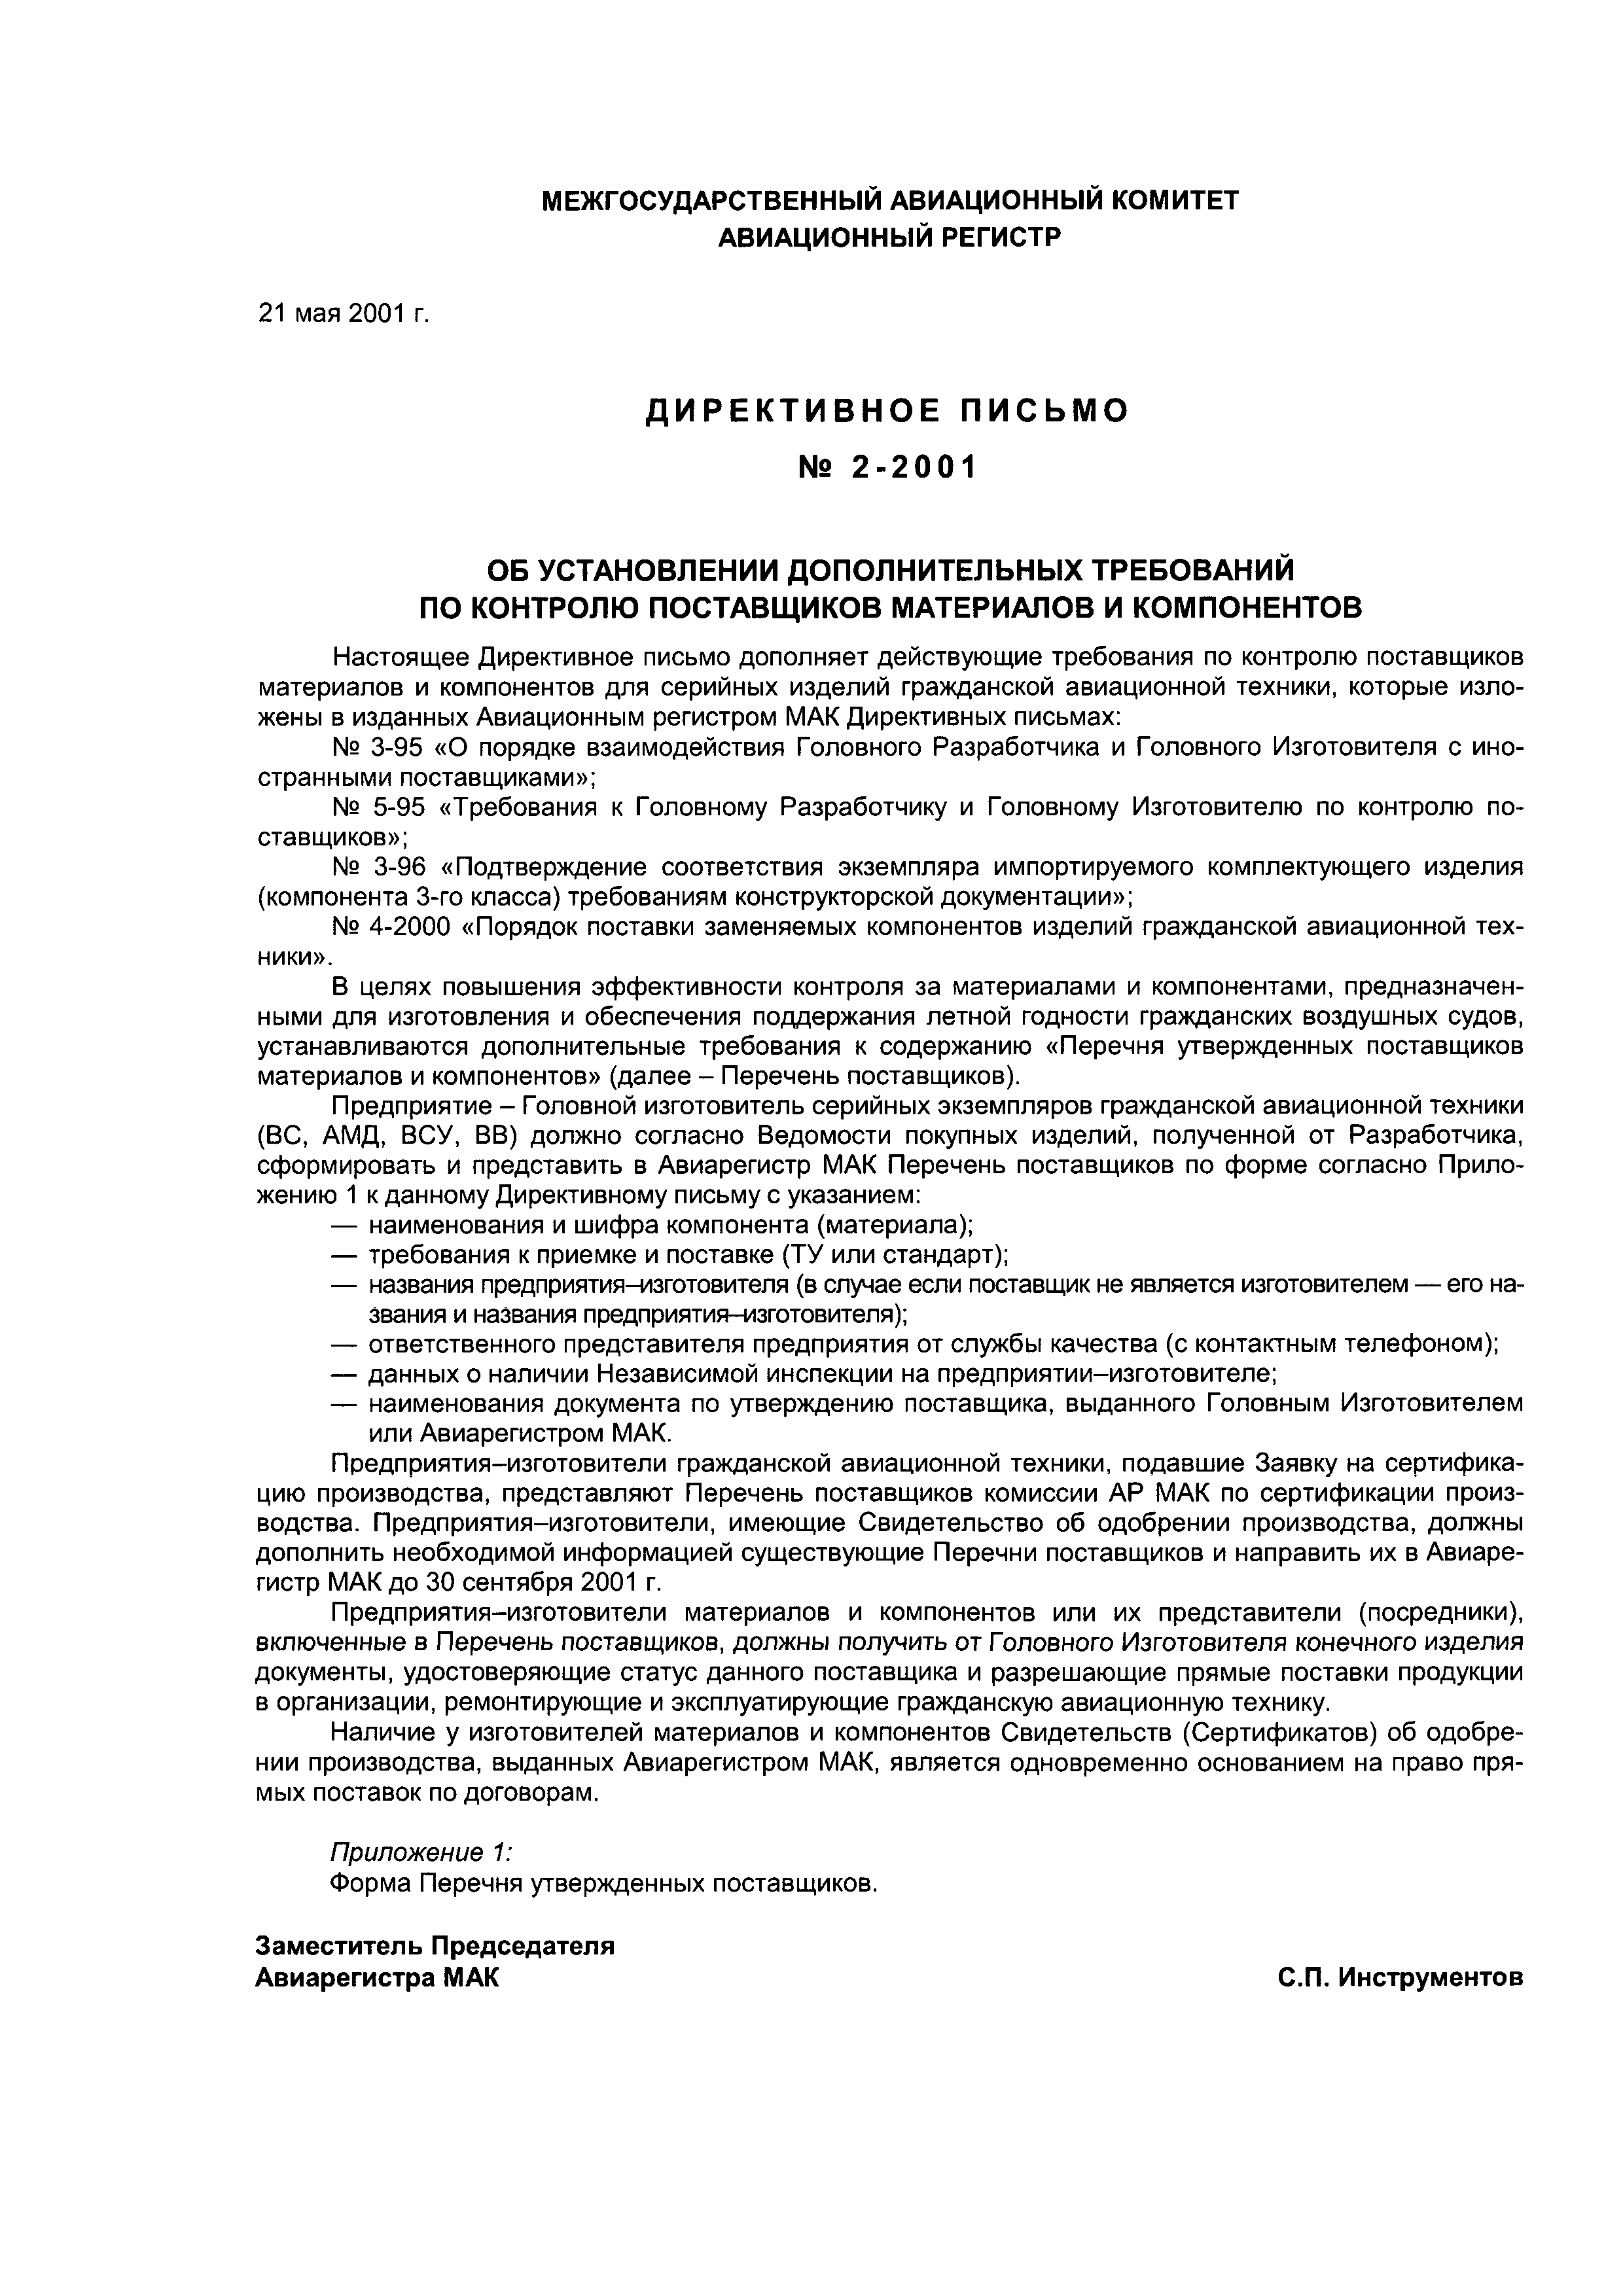 Директивное письмо 2-2001